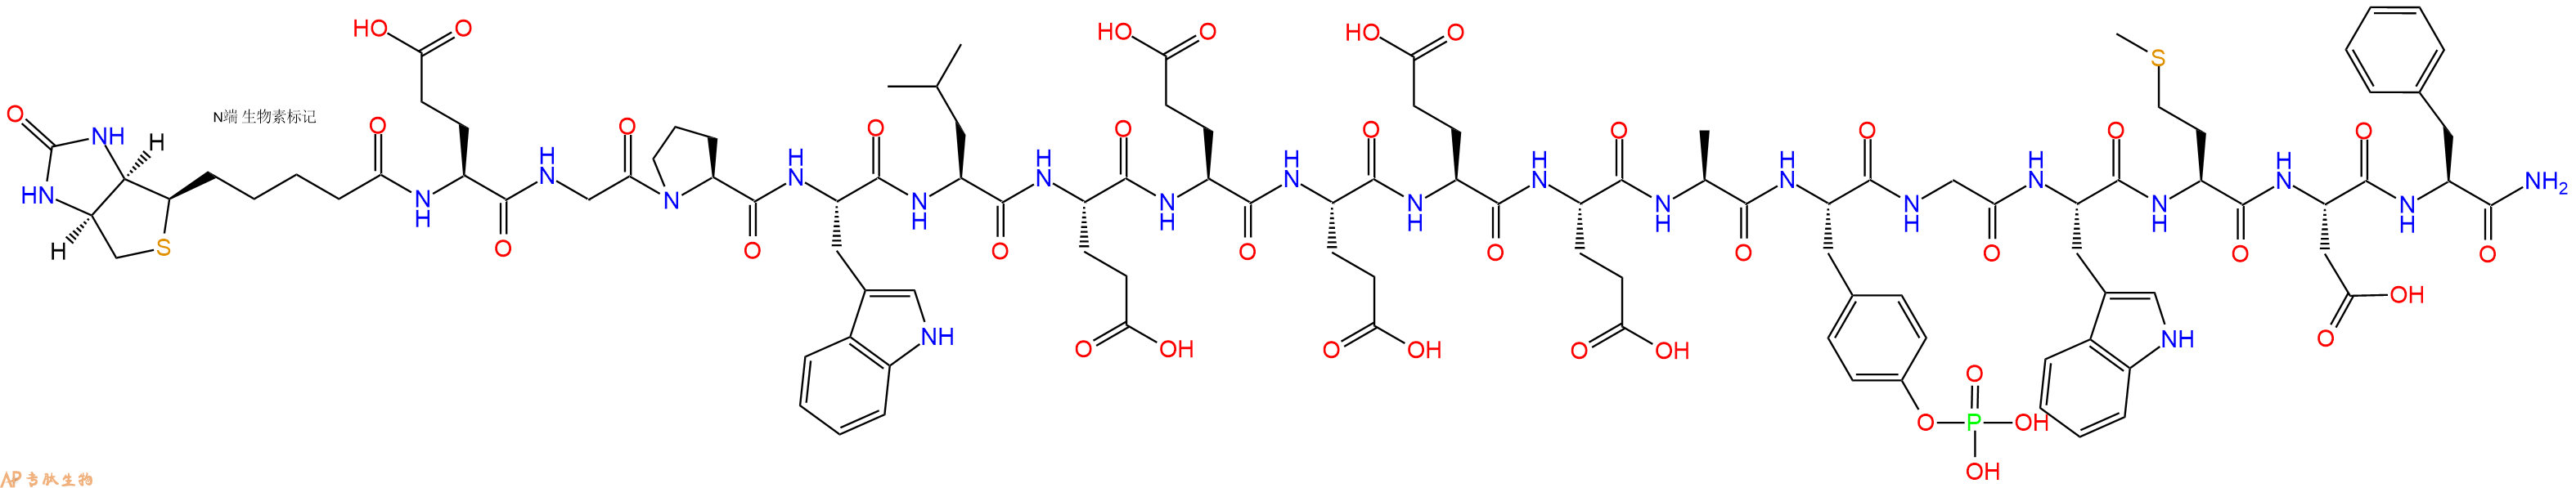 专肽生物产品胃泌素Biotin-(Glu1)-GastrinI(human)(phosphorylated)